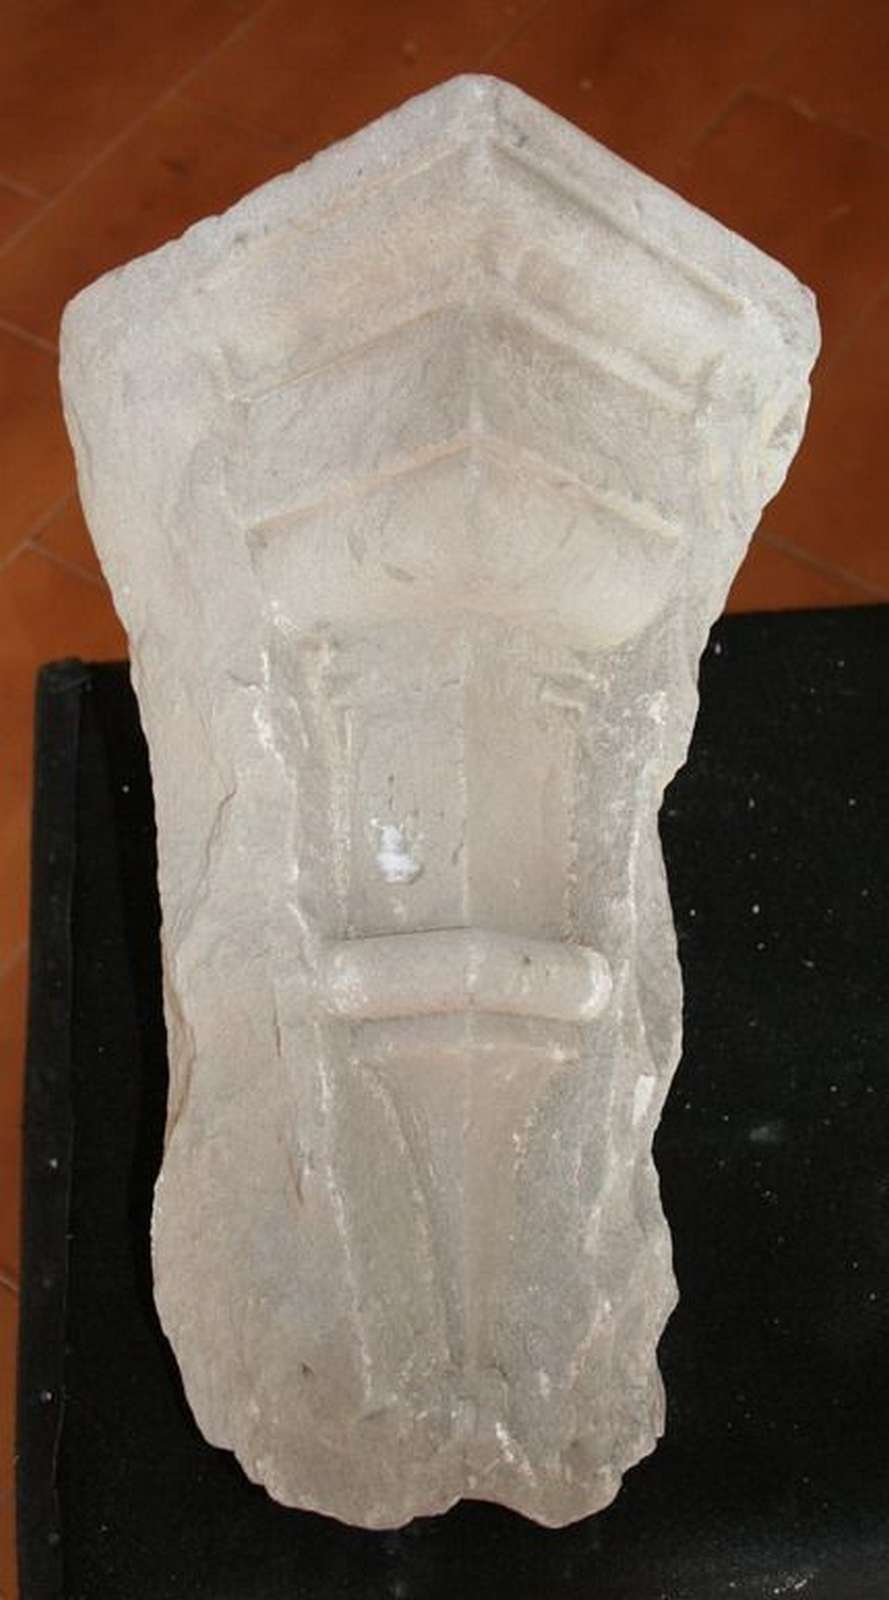 Antico capitello in pietra. Epoca 1400. - Capitelli basi per colonne - Architettura - Prodotti - Antichità Fiorillo